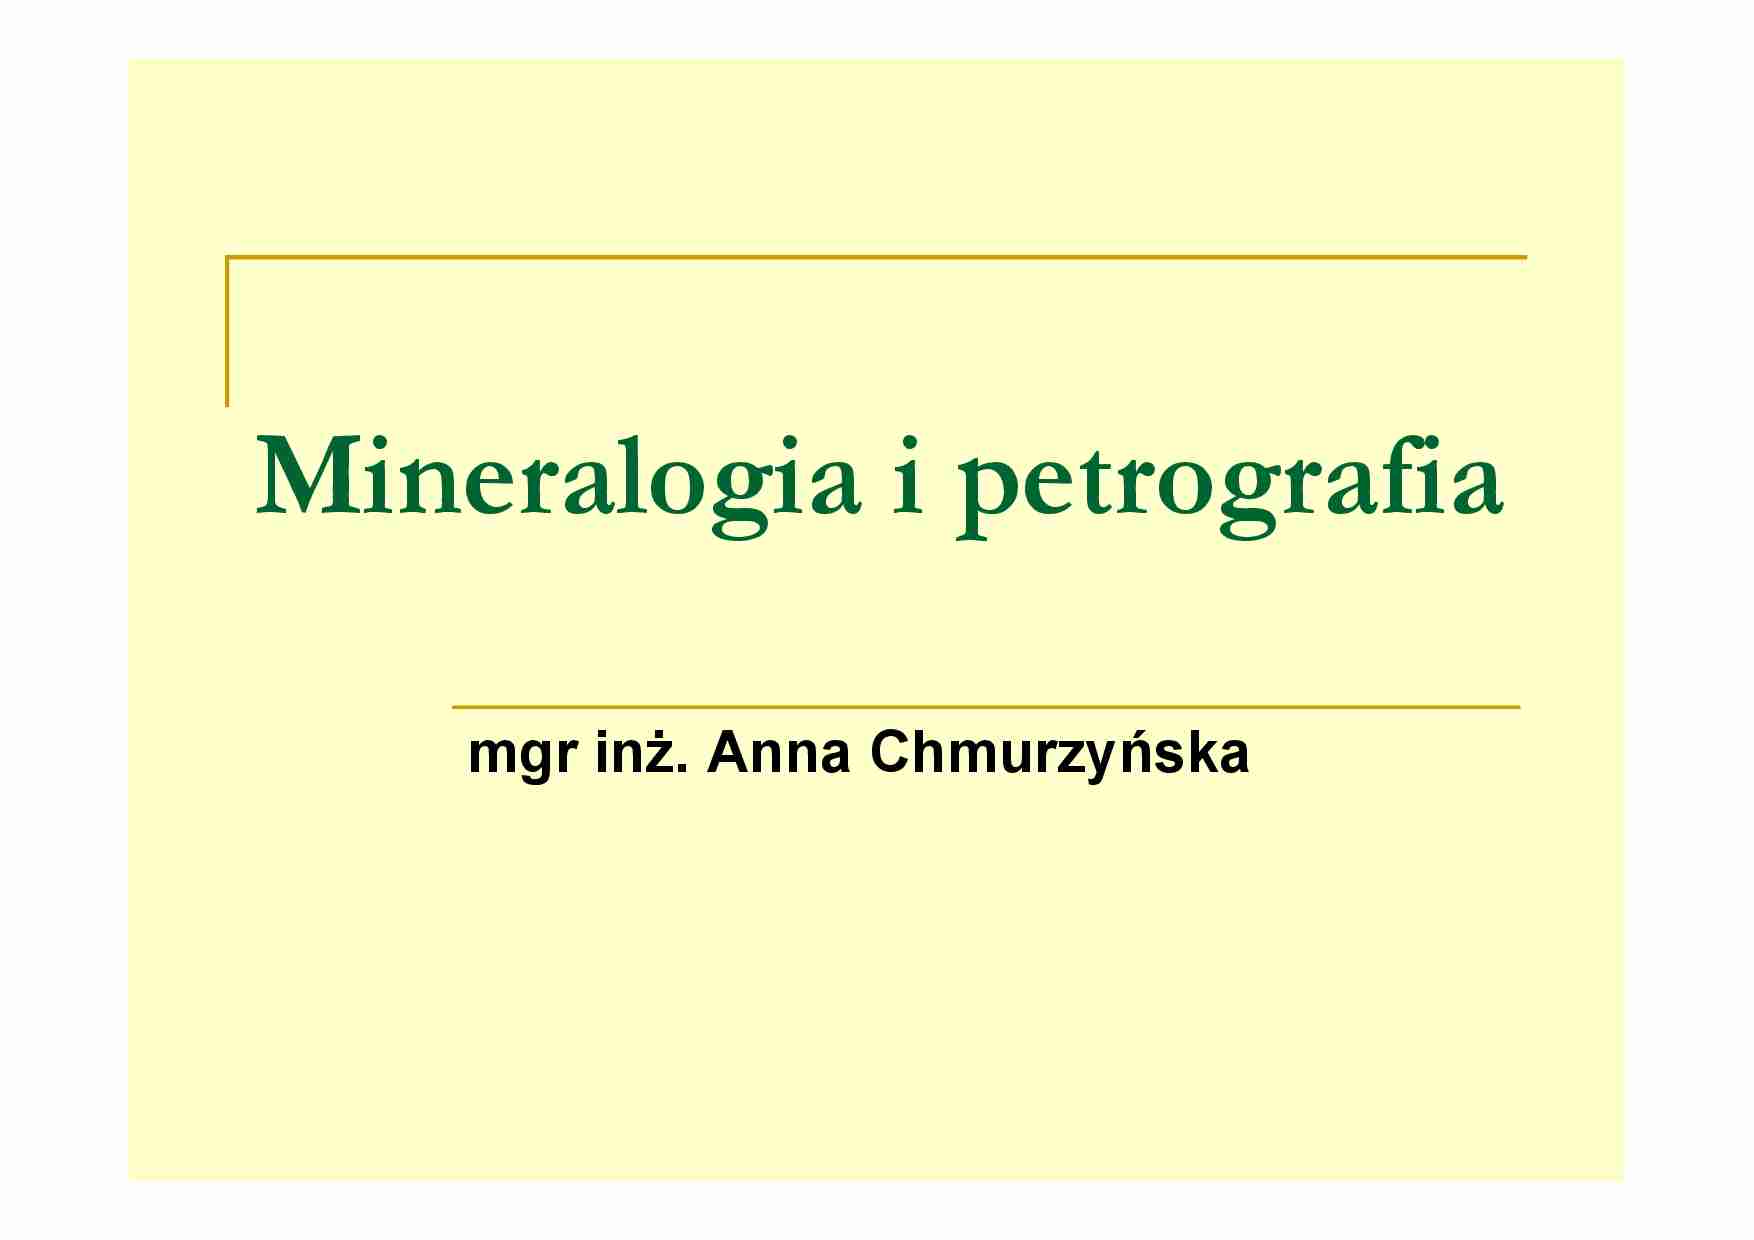 Mineralogia i petrografia - omówienie - strona 1